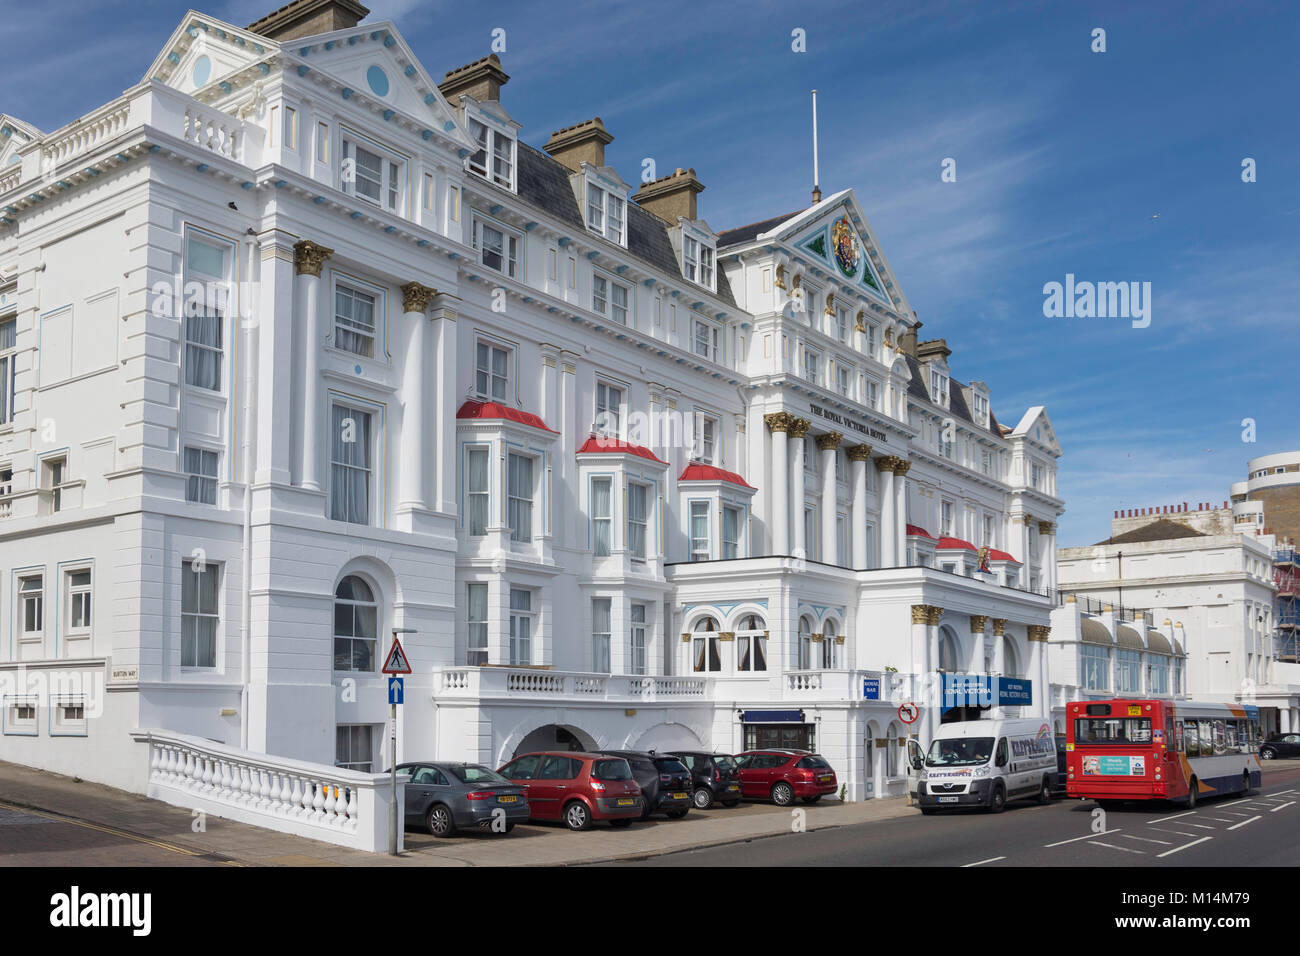 Royal Victoria Hotel, Marina, St Leonards-on-Sea, Hastings, East Sussex, England, United Kingdom Stock Photo